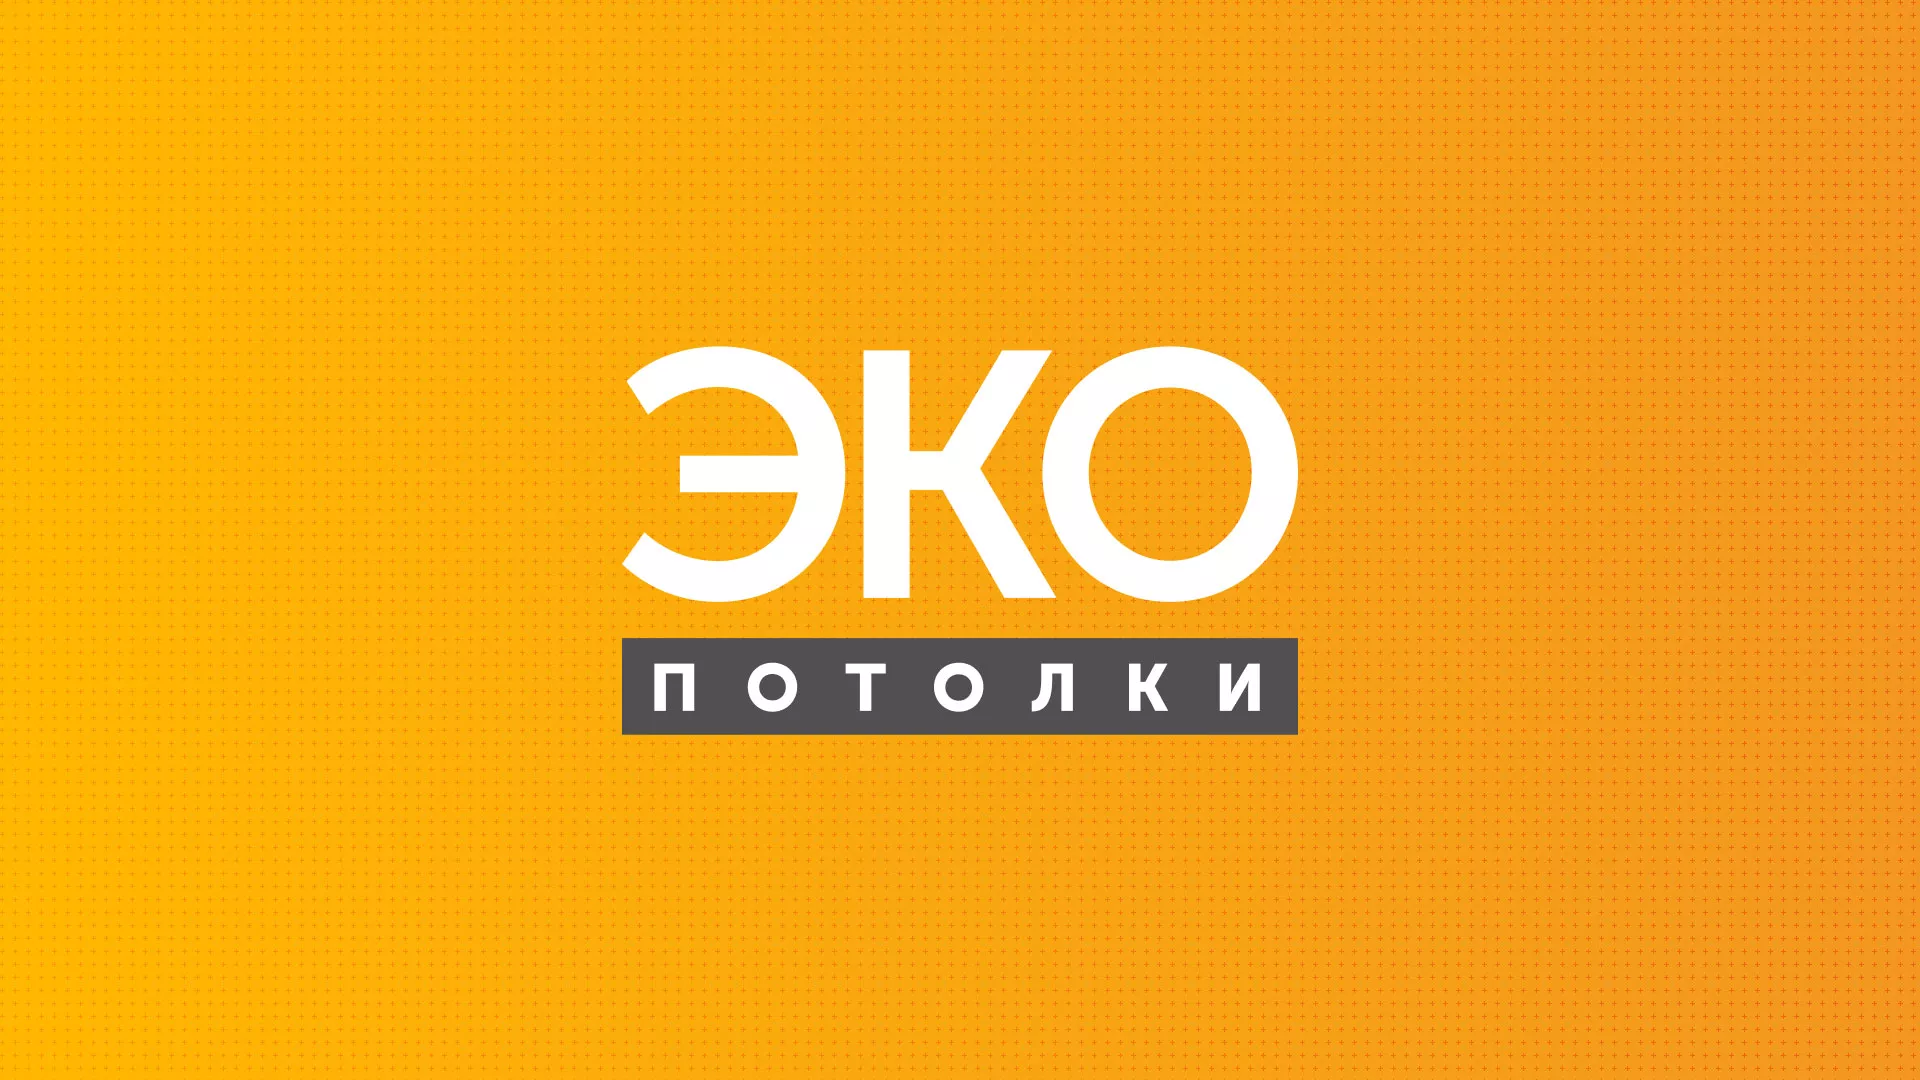 Разработка сайта по натяжным потолкам «Эко Потолки» в Новоалександровске